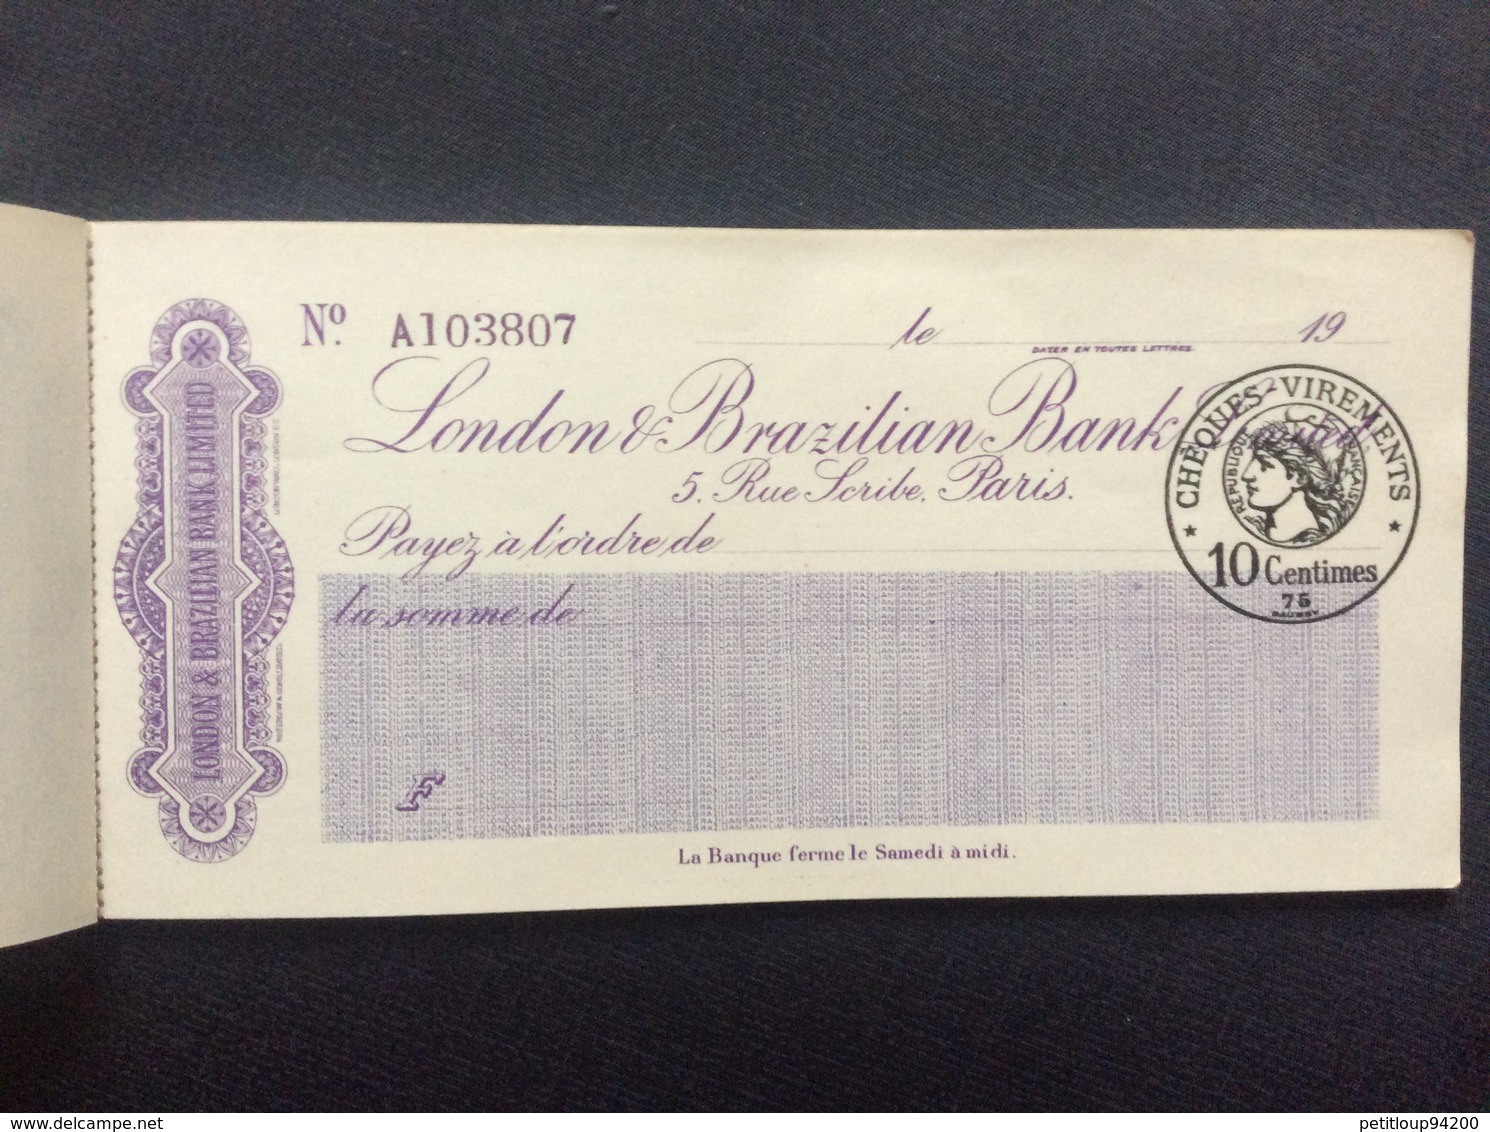 CARNET DE CHÈQUES  London Brazilian Bank  PARIS - Cheques & Traveler's Cheques